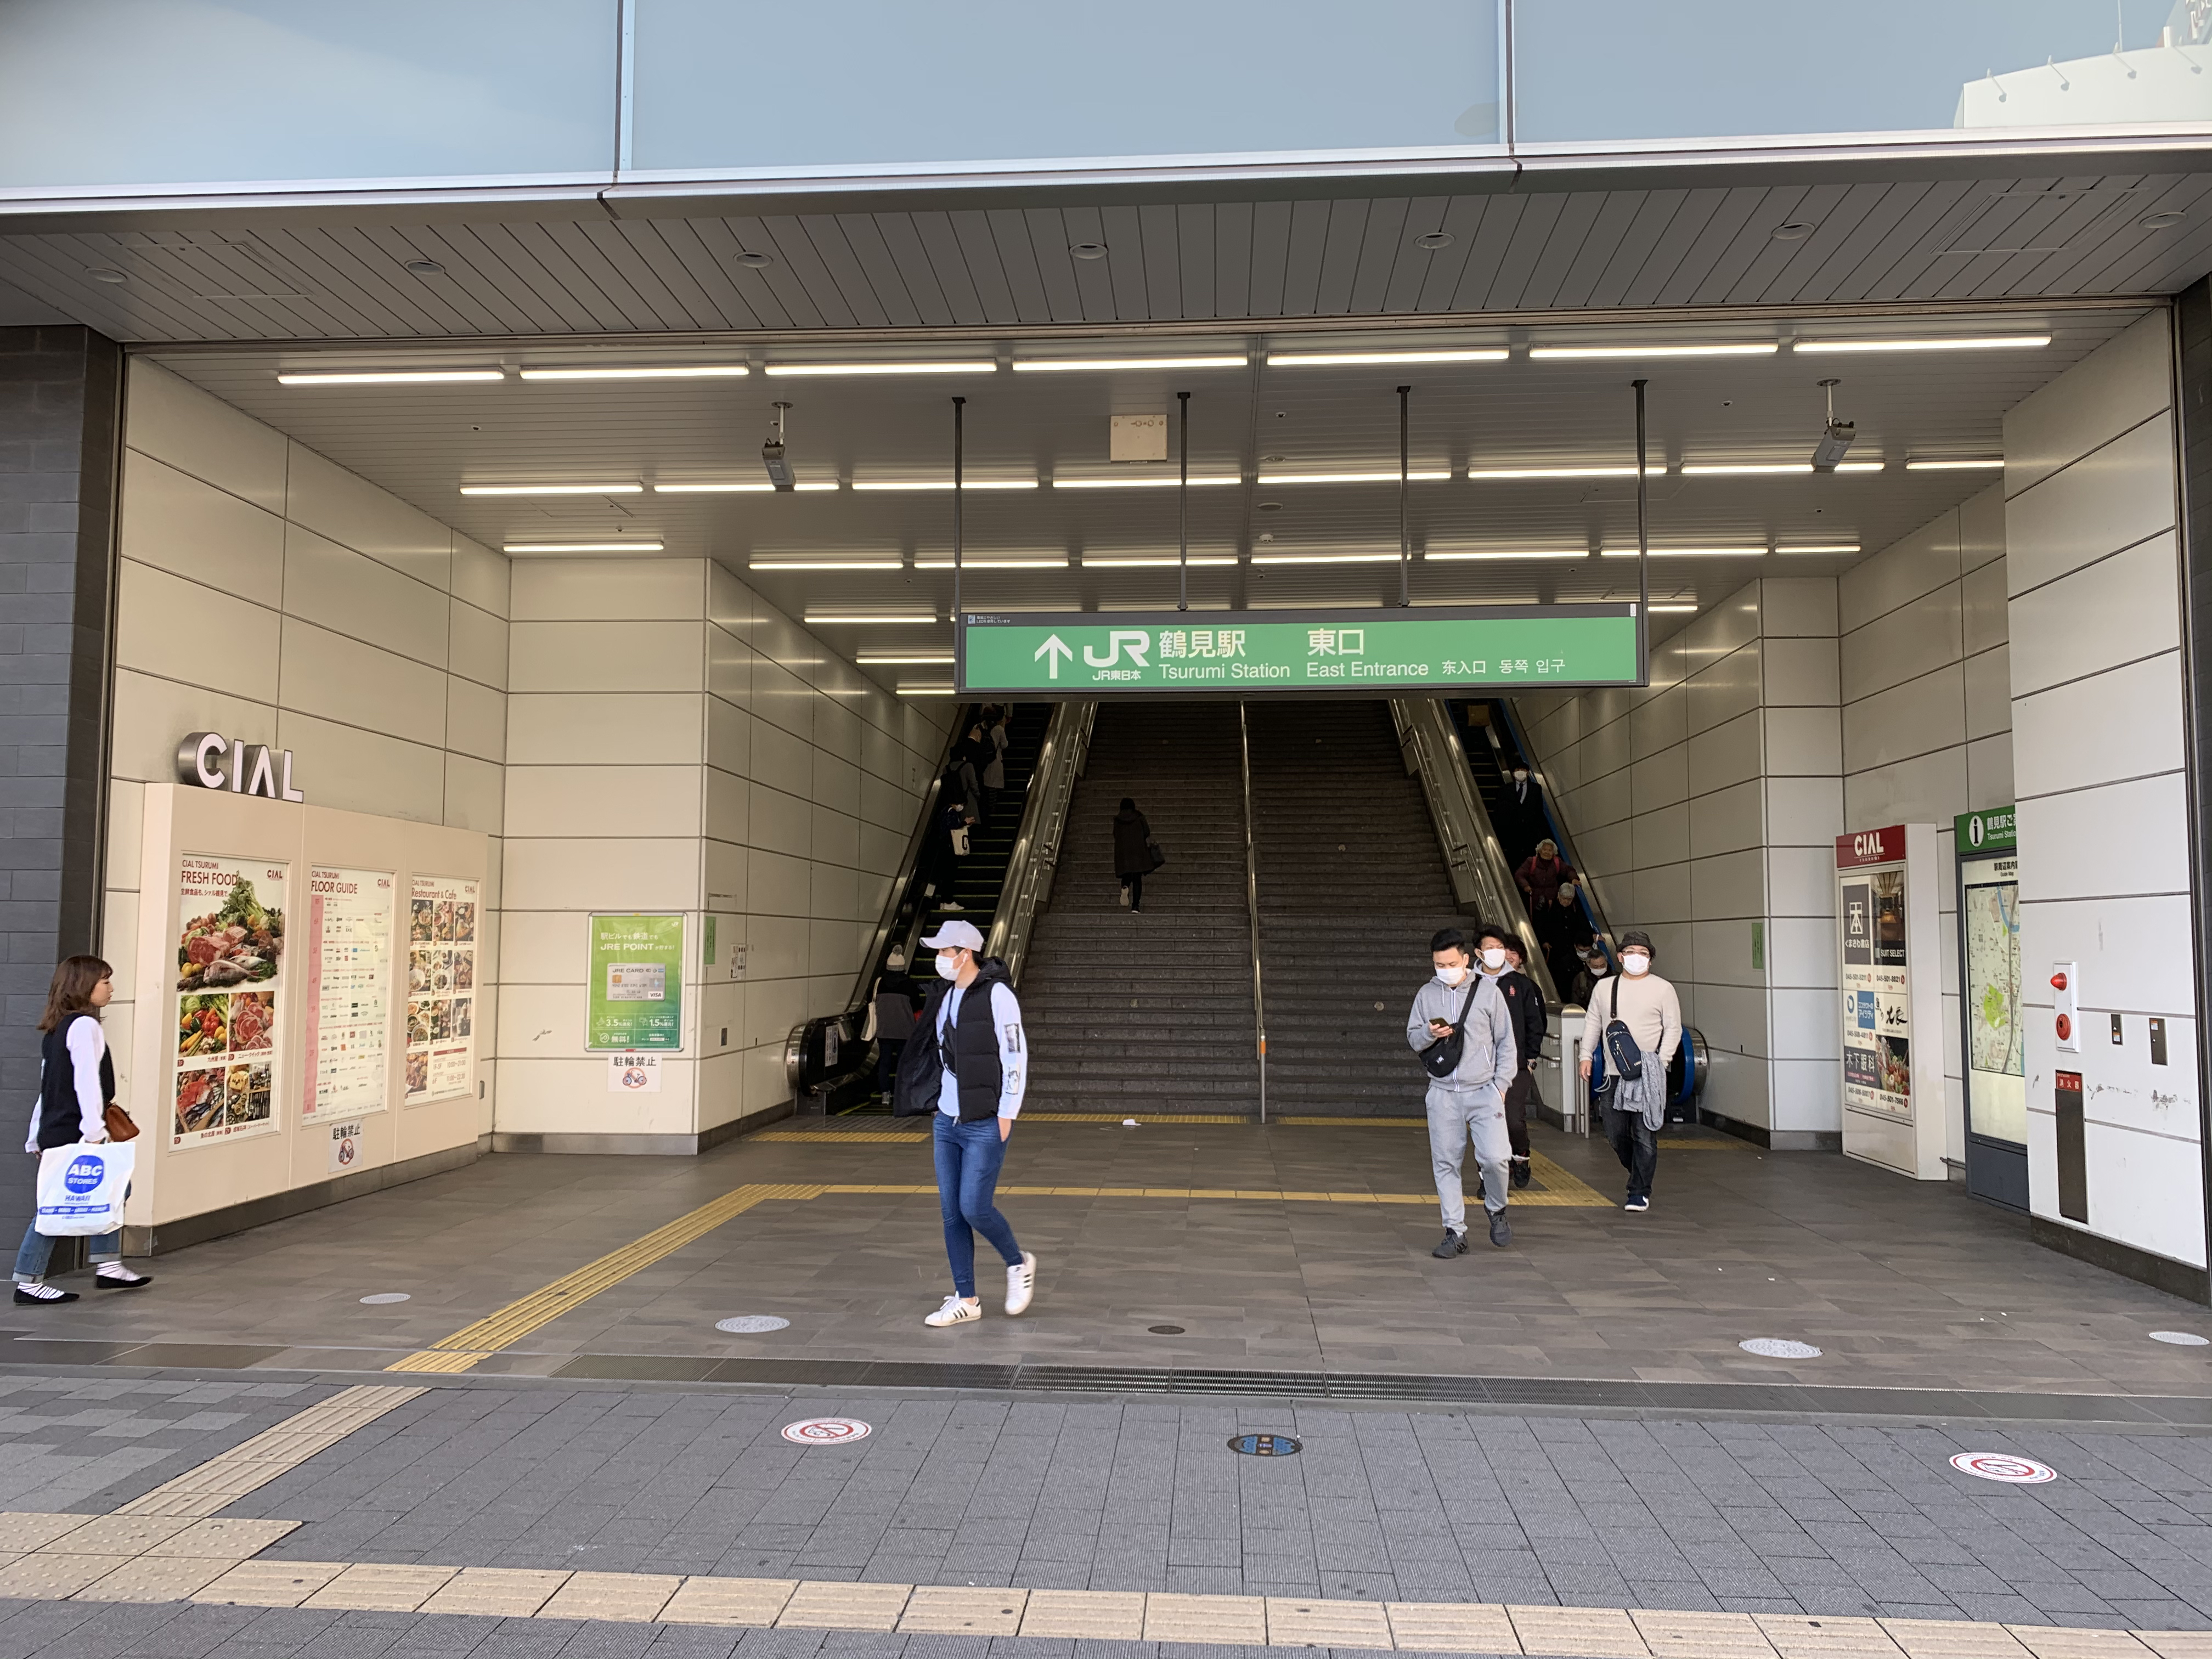 鶴見駅東口